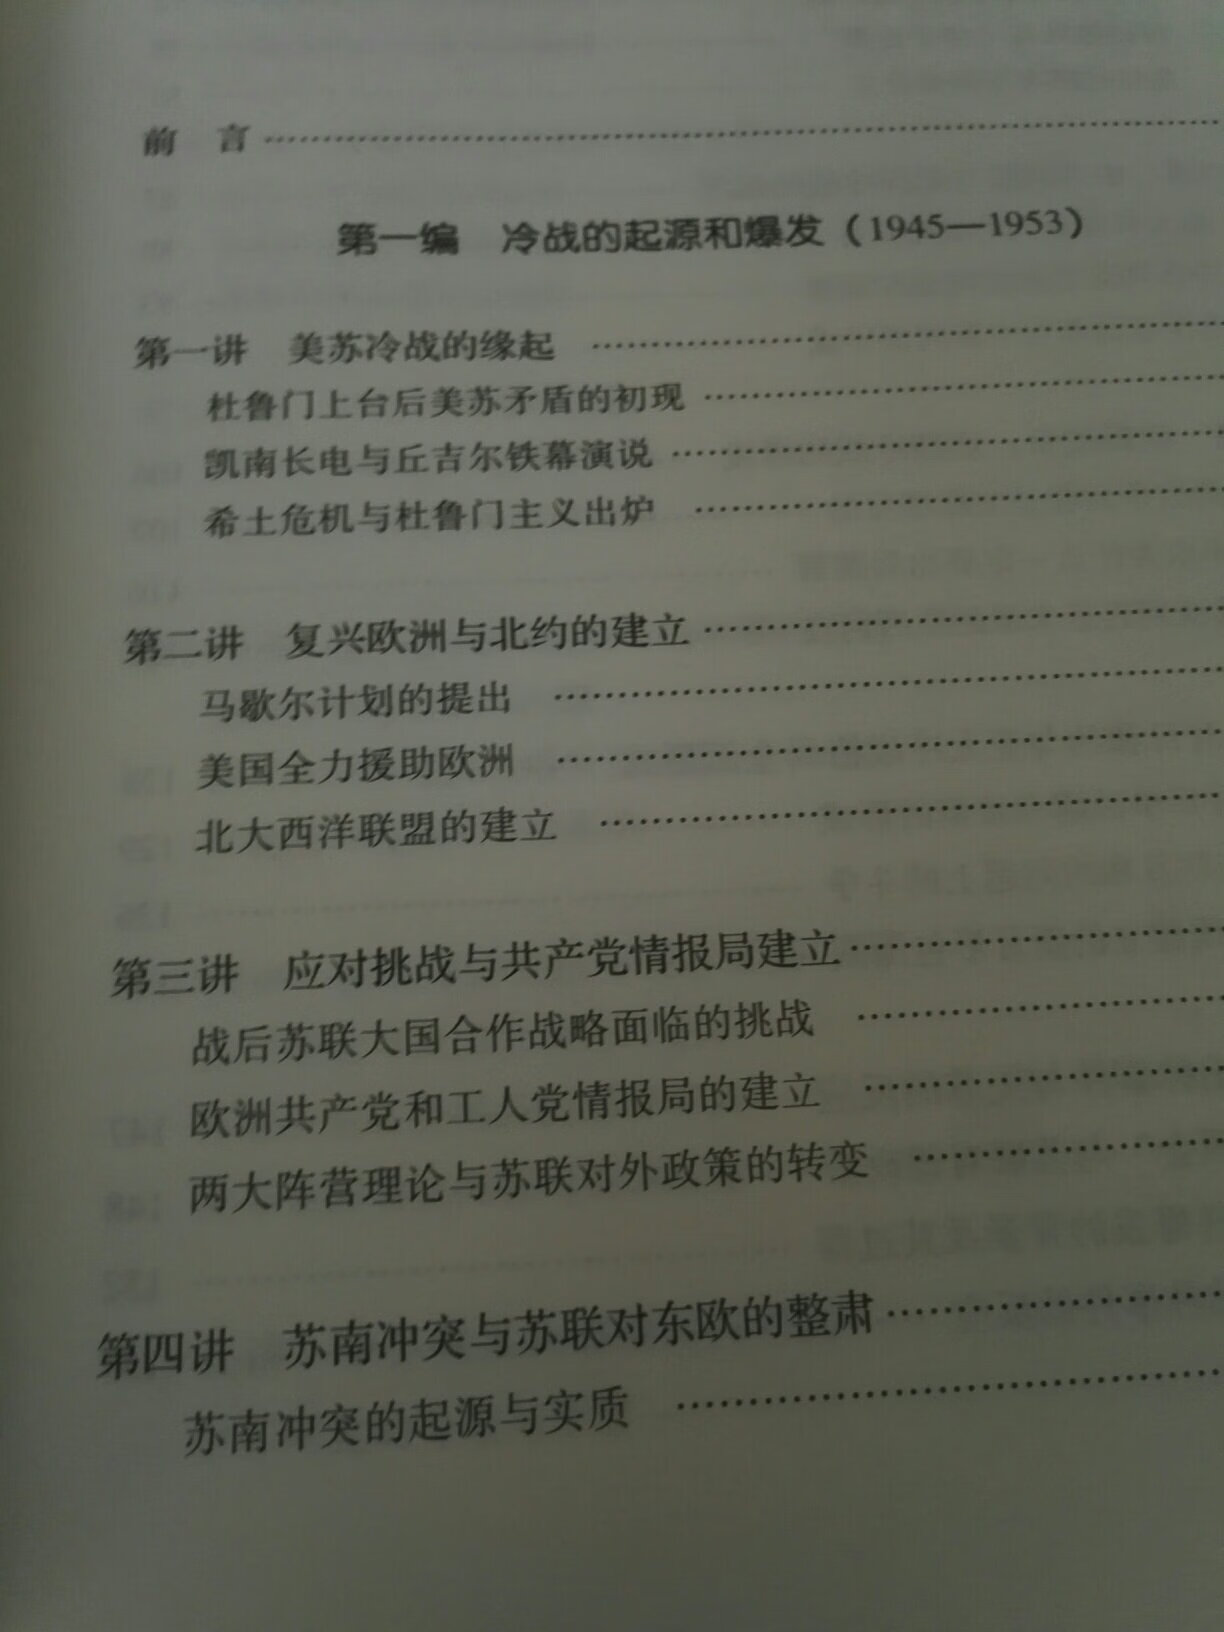 沈志华老师的书必收，可读性很强。